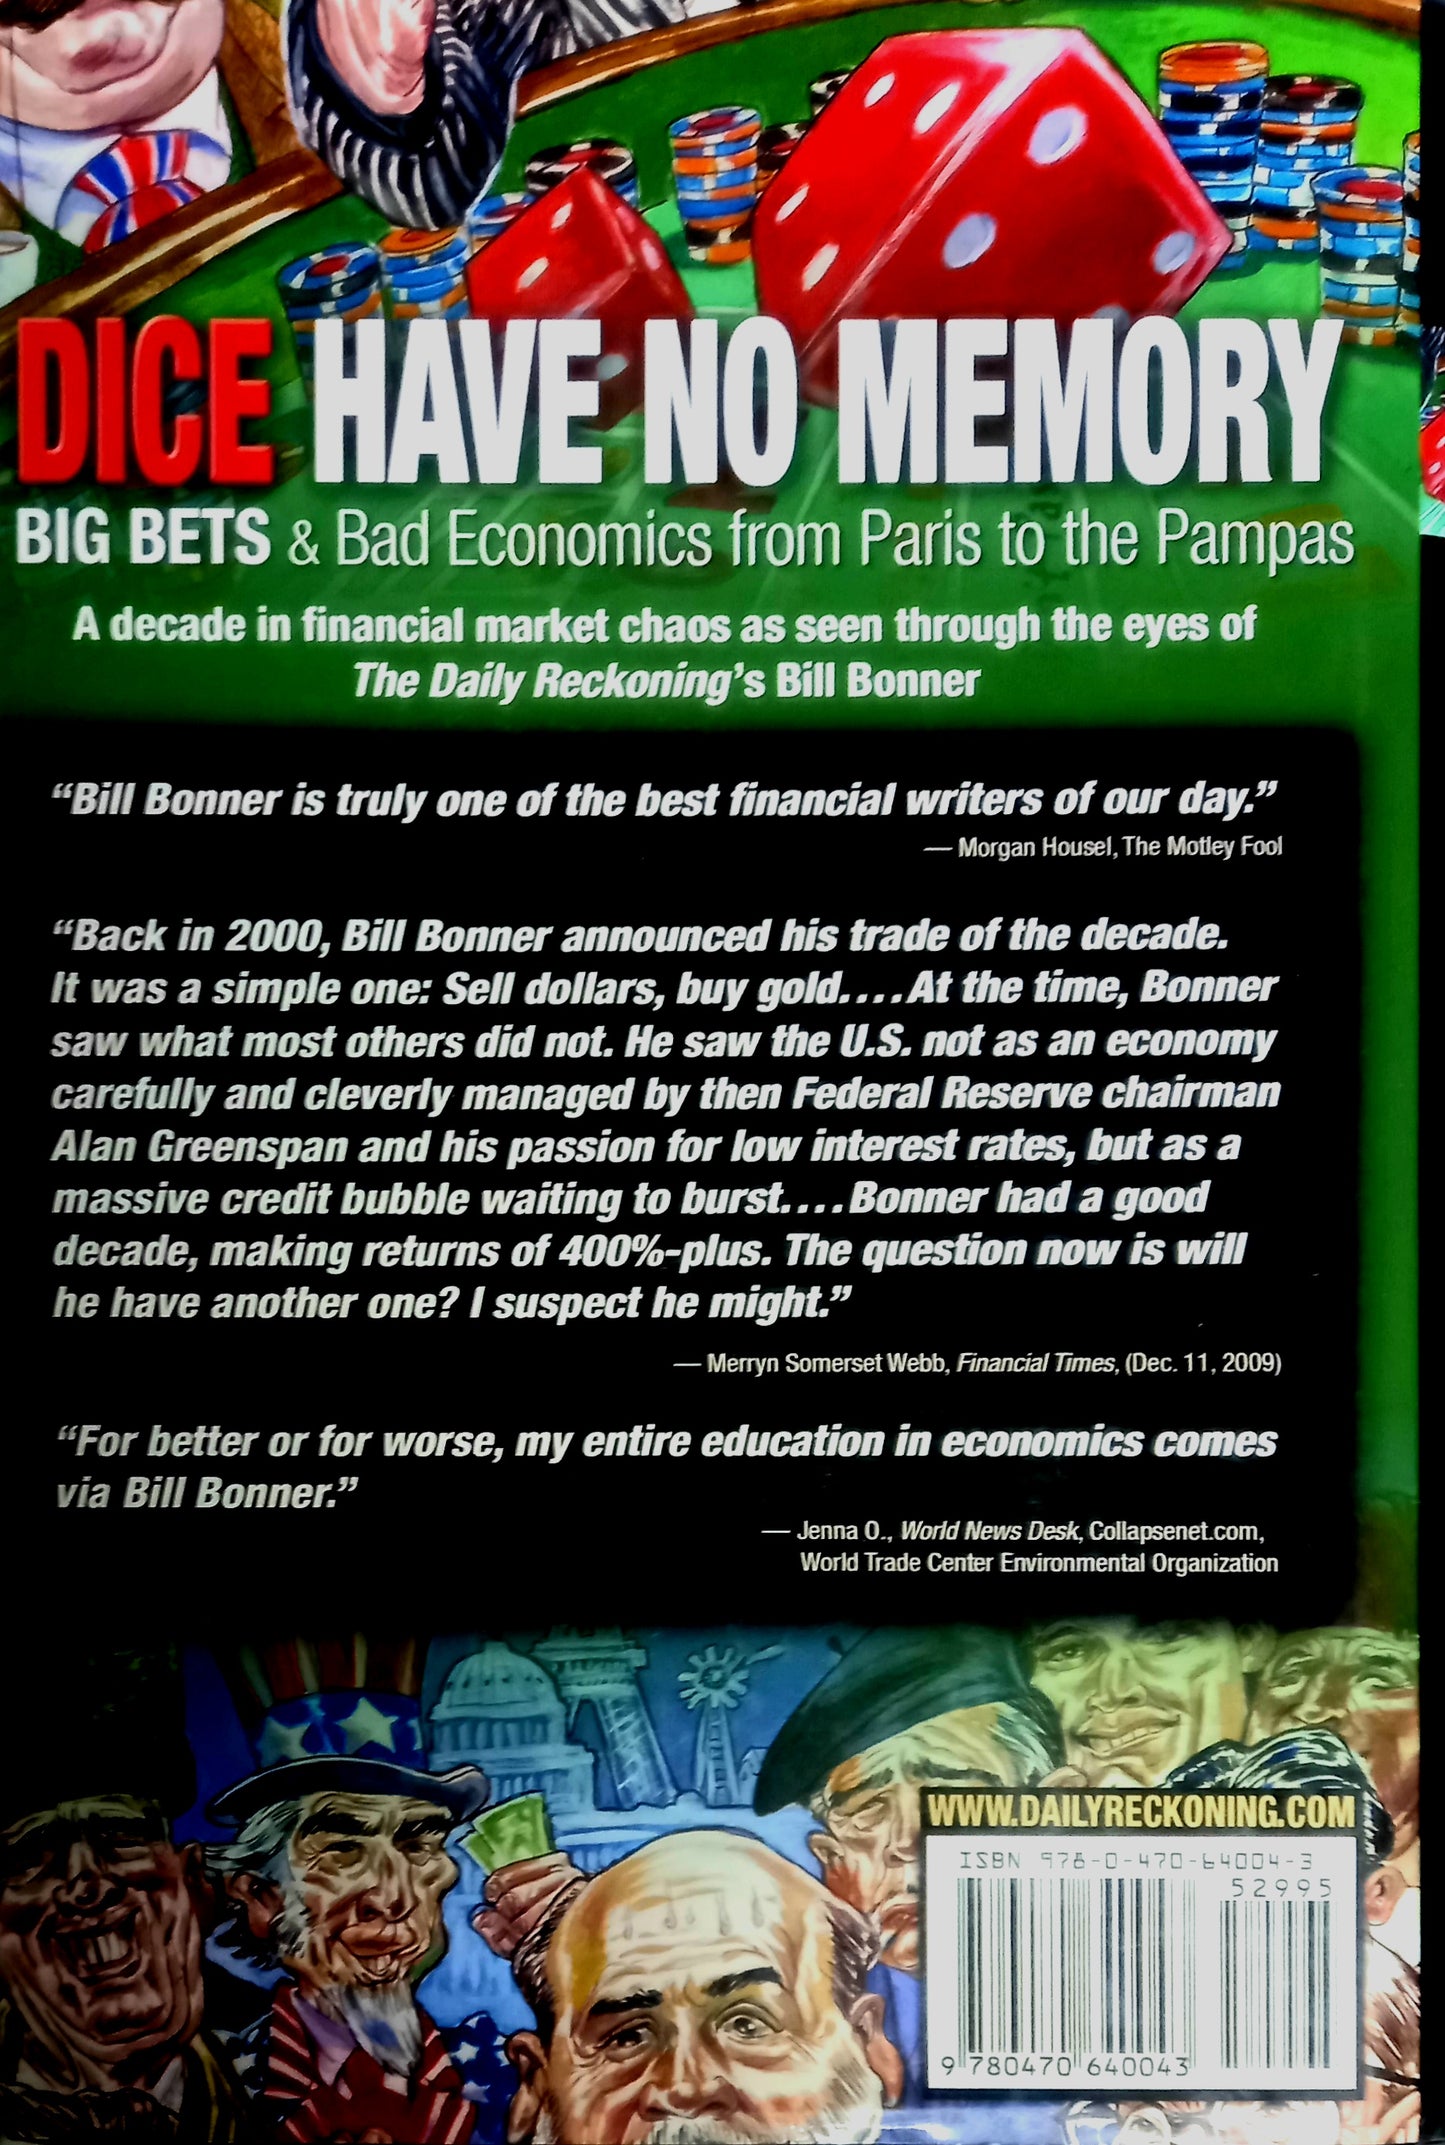 Dice Have No Memory